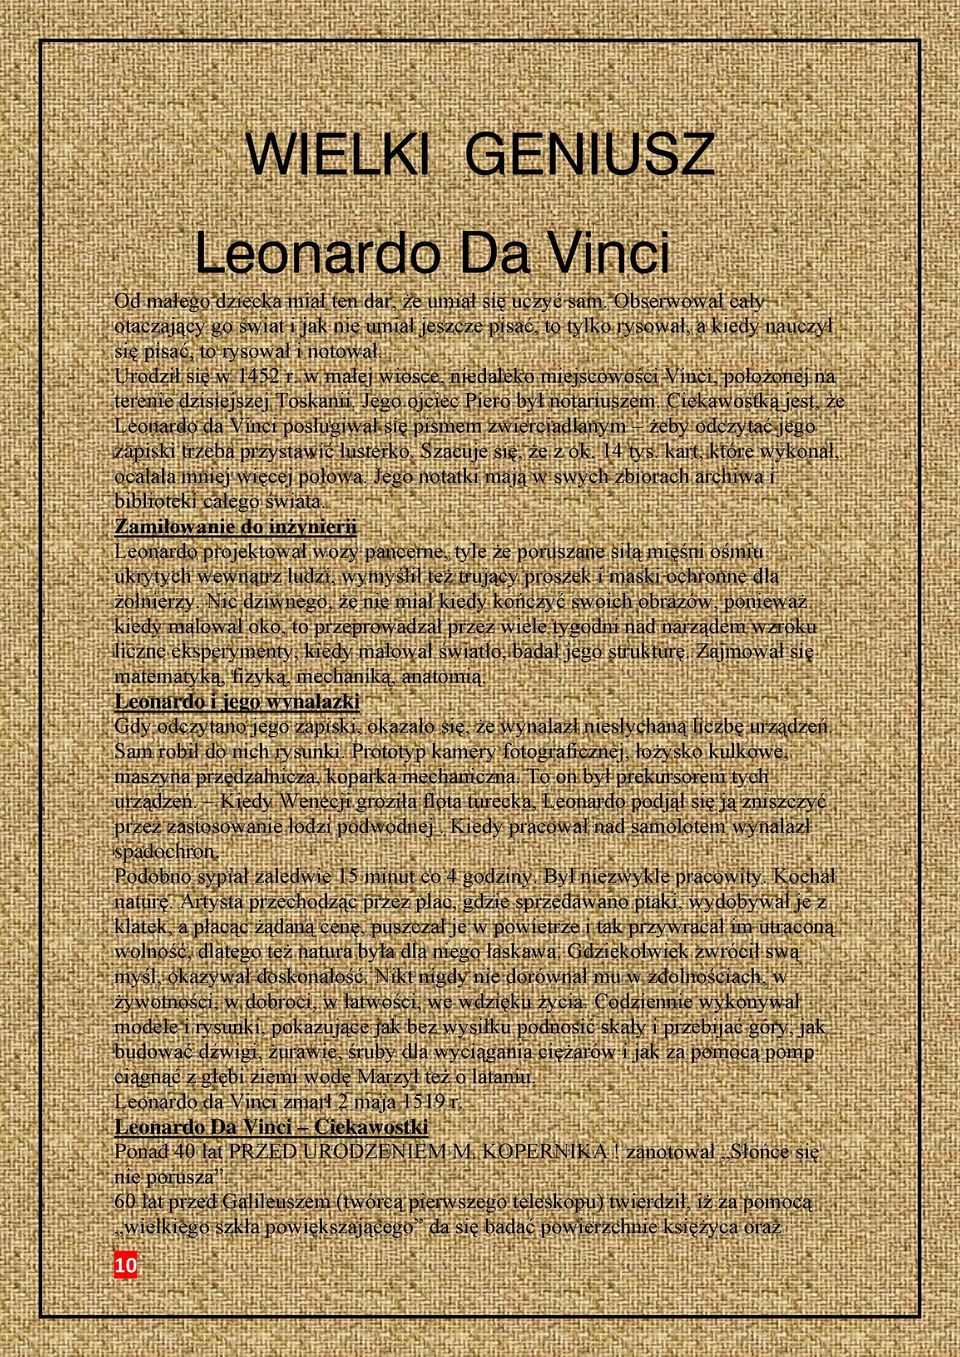 w małej wiosce, niedaleko miejscowości Vinci, położonej na terenie dzisiejszej Toskanii. Jego ojciec Piero był notariuszem.